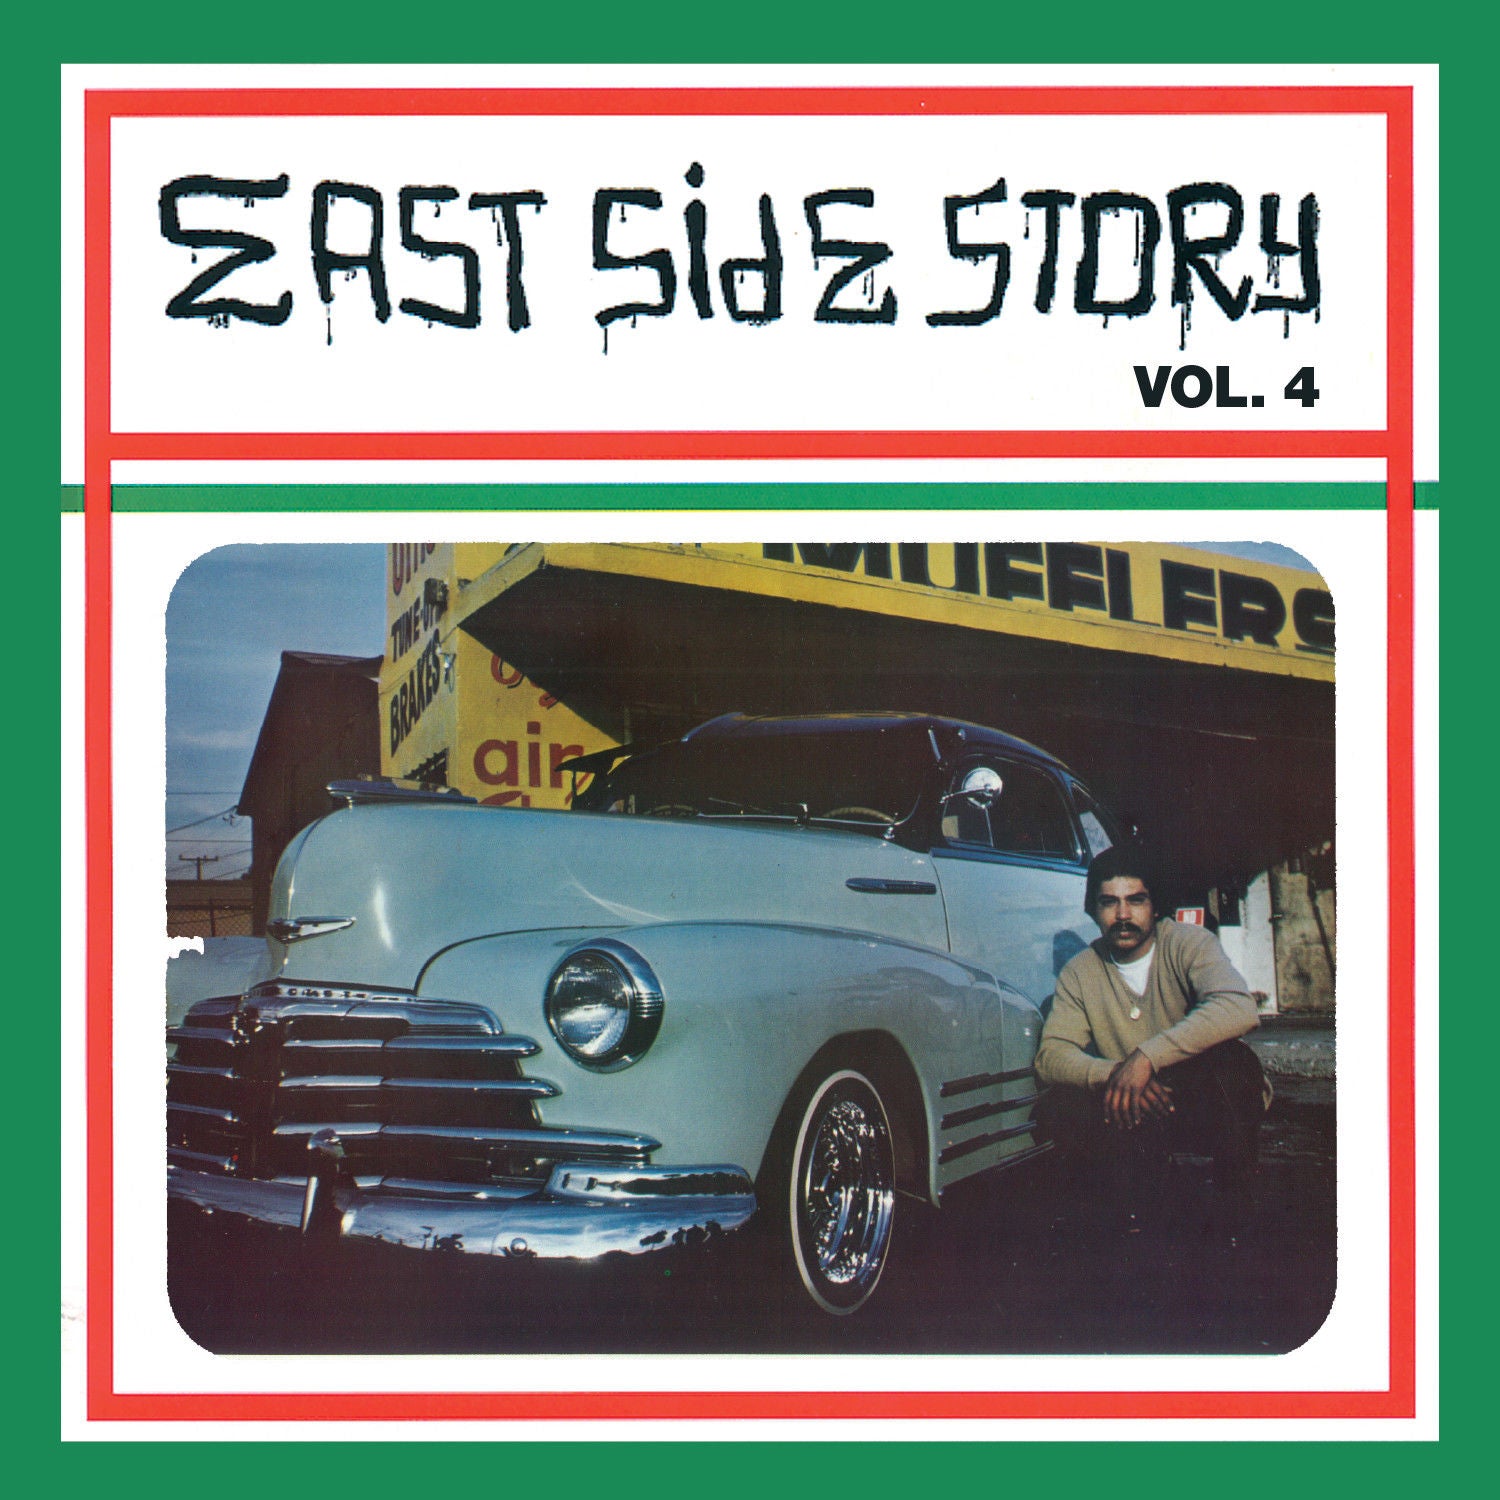 EAST SIDE STORY VOL. 4 Vinyl LP